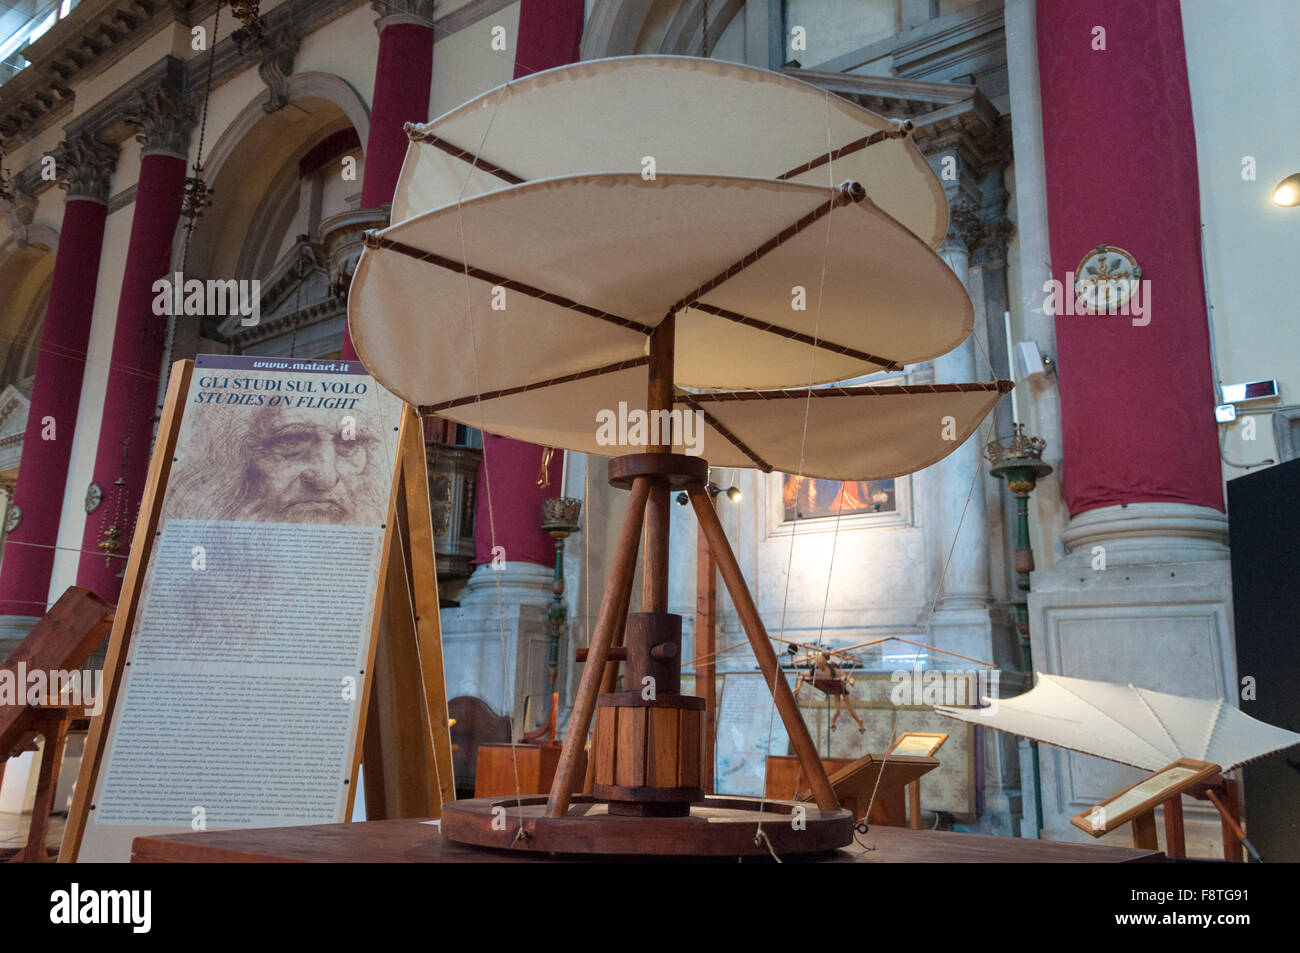 Exposition de Da Vinci machines, machines volantes illustré ici, Venise, Italie Banque D'Images